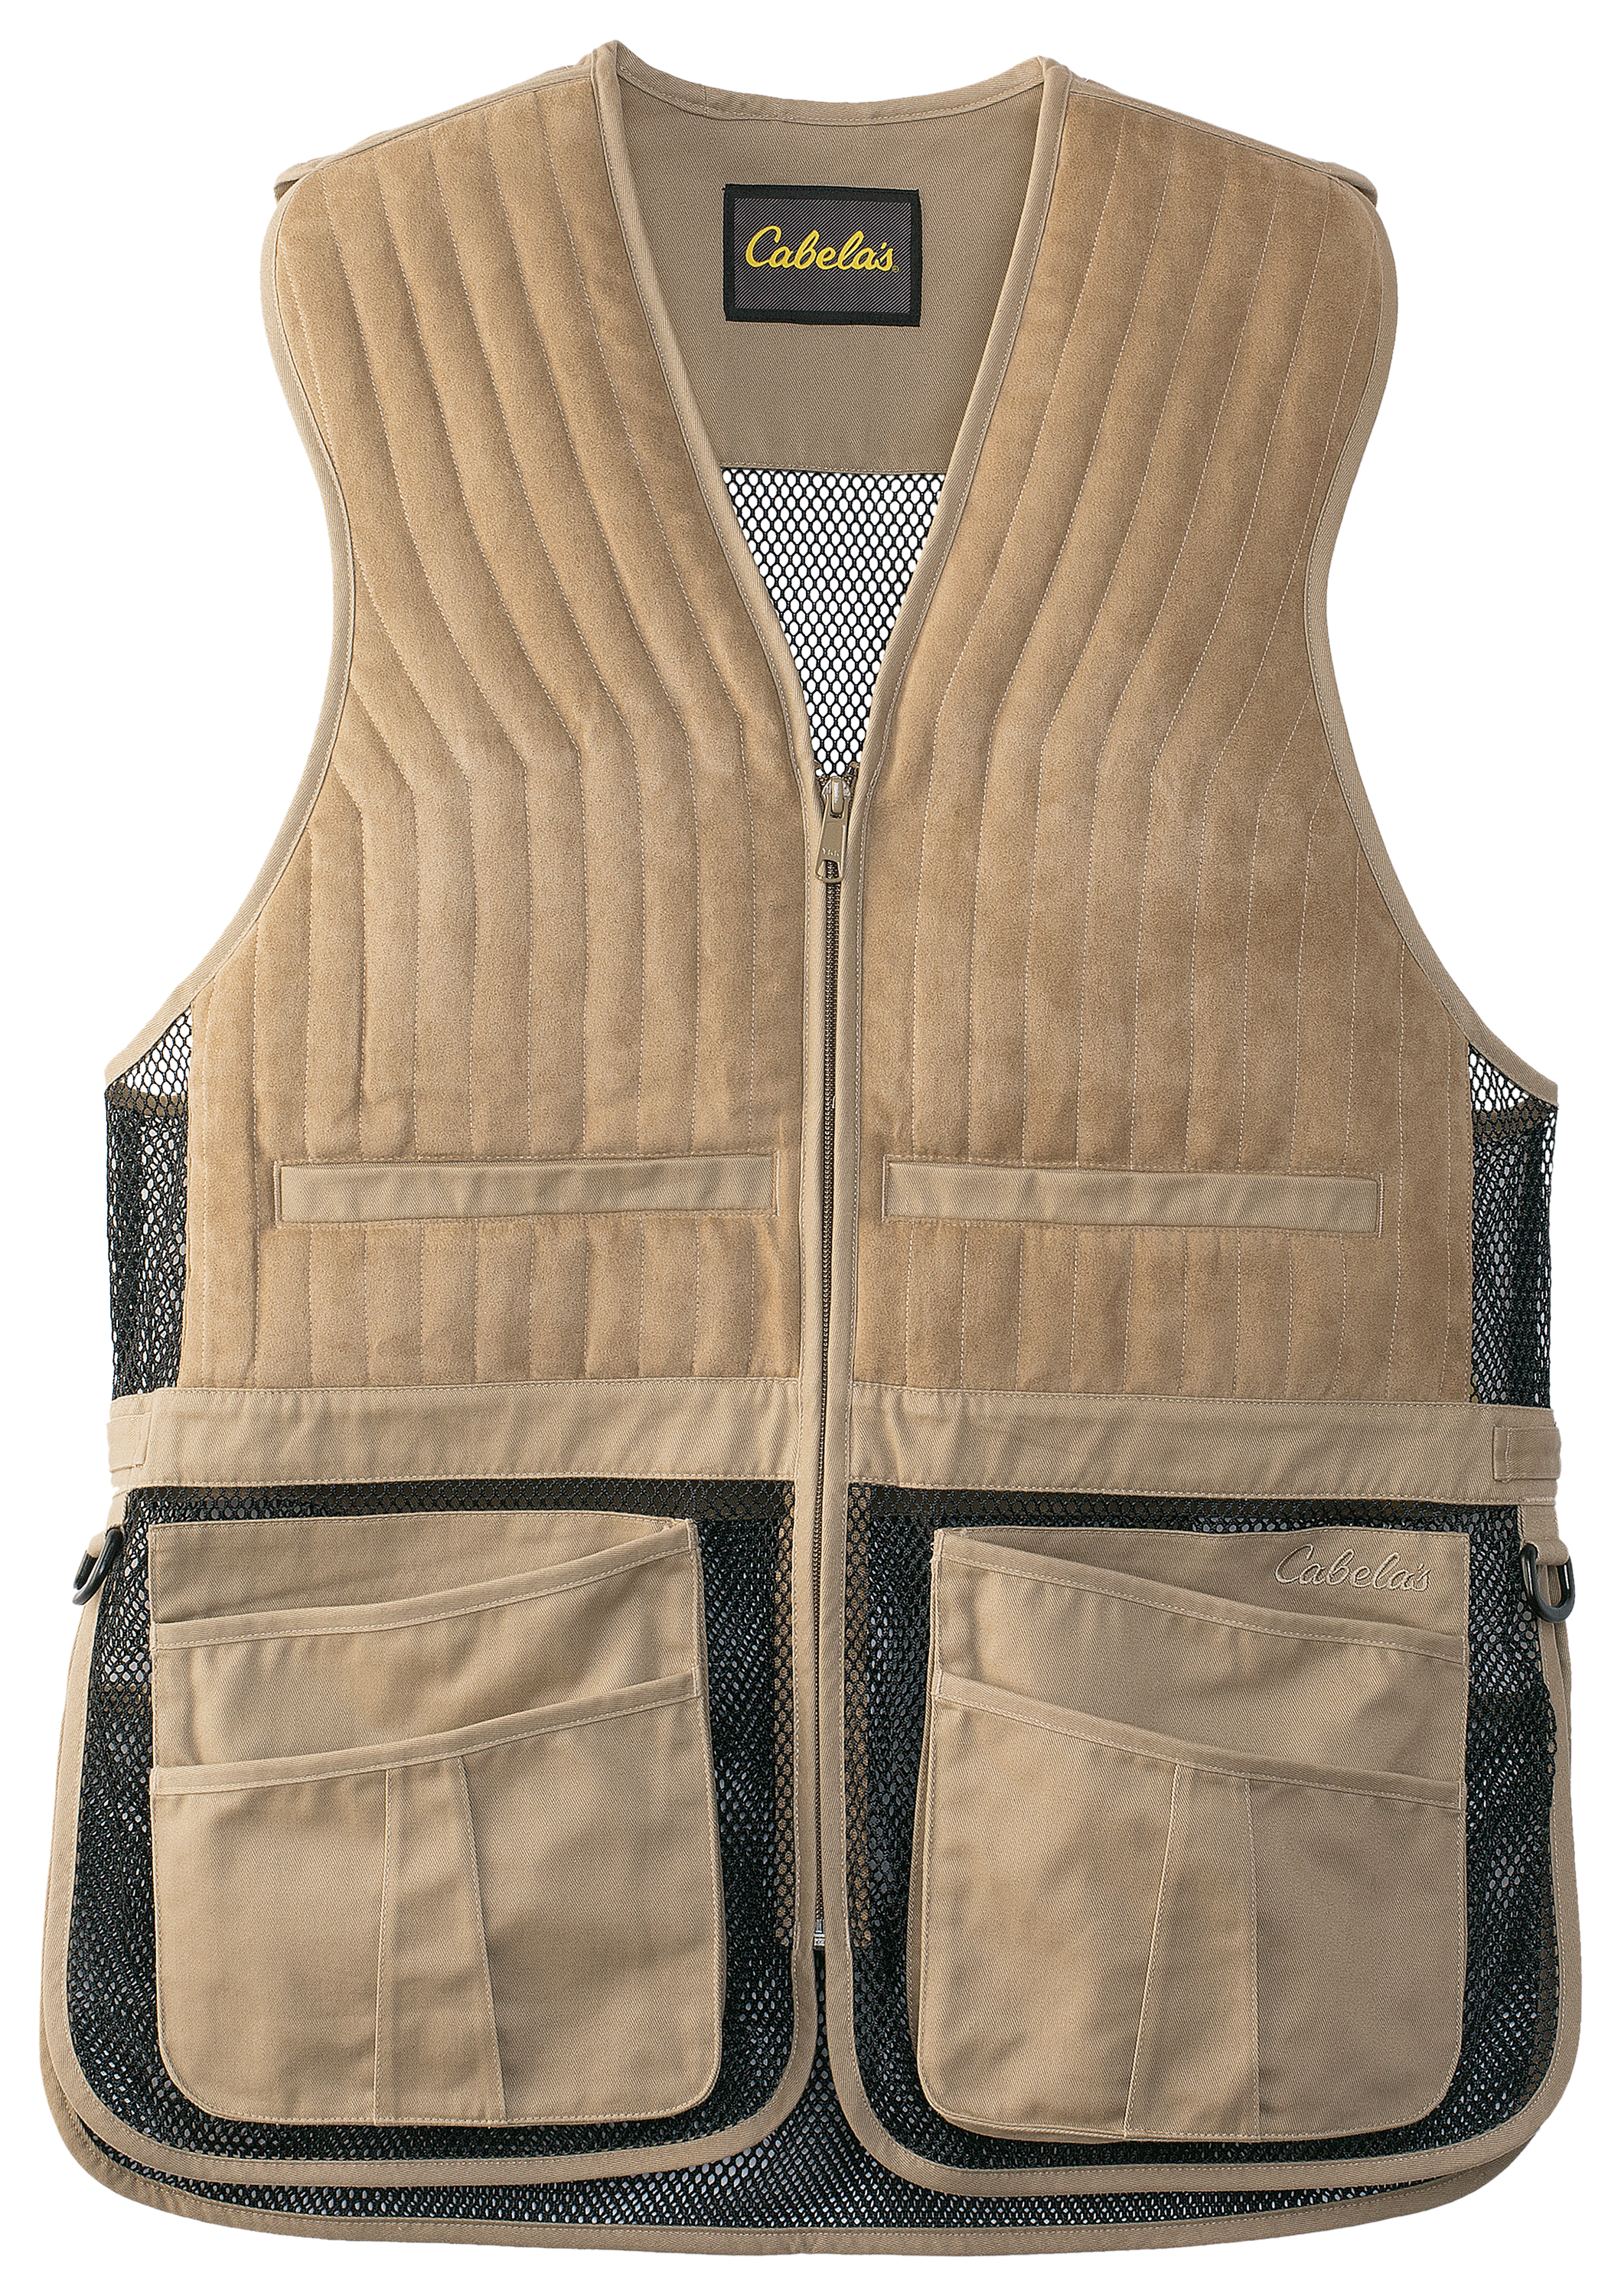 Cabela's Targetmaster II Shooting Vest for Men